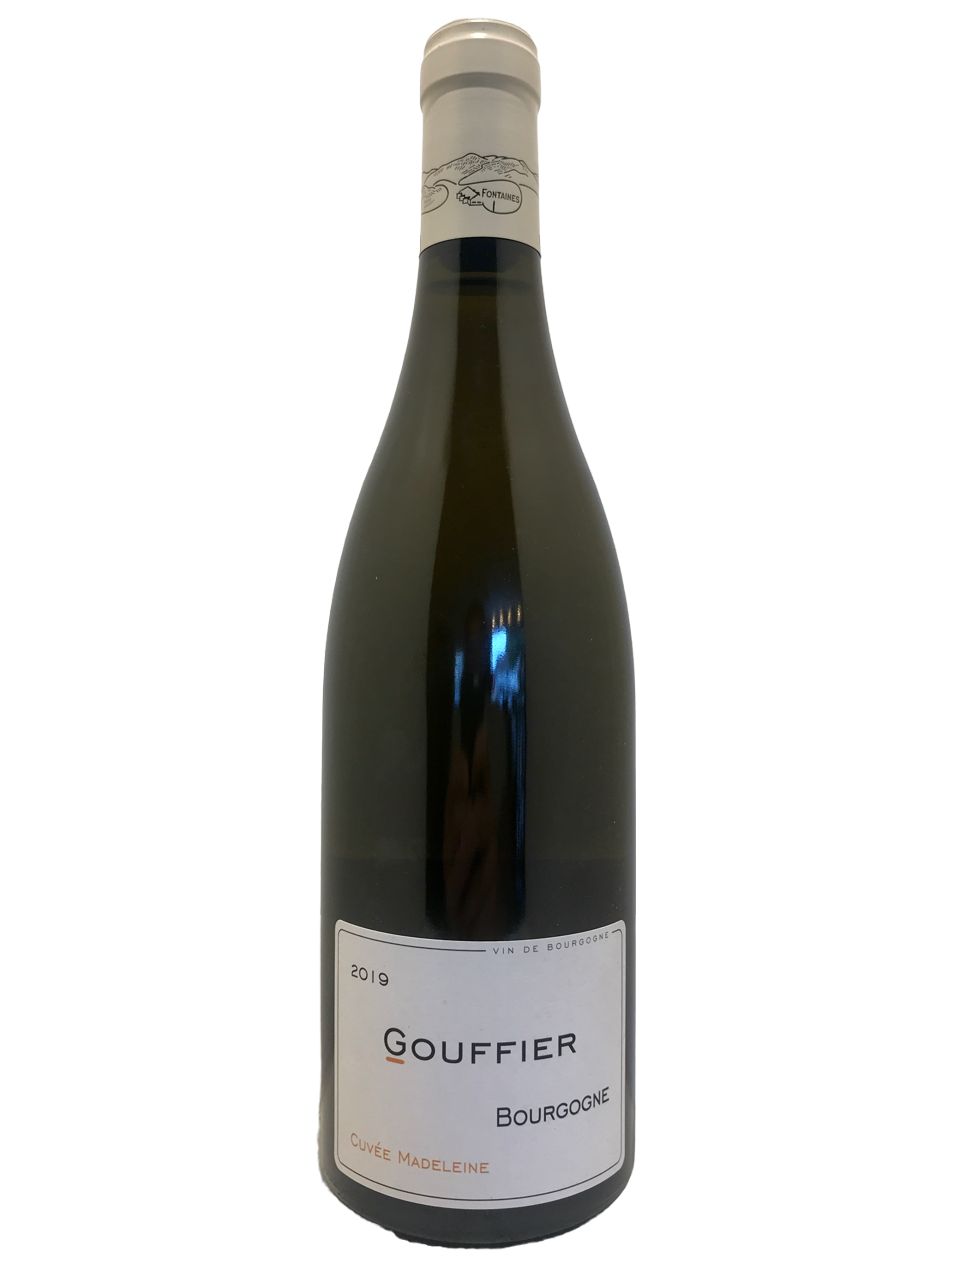 vin de bourgogne burgundy wine domaine gouffier bourgogne cuvée madeleine blanc chardonnay